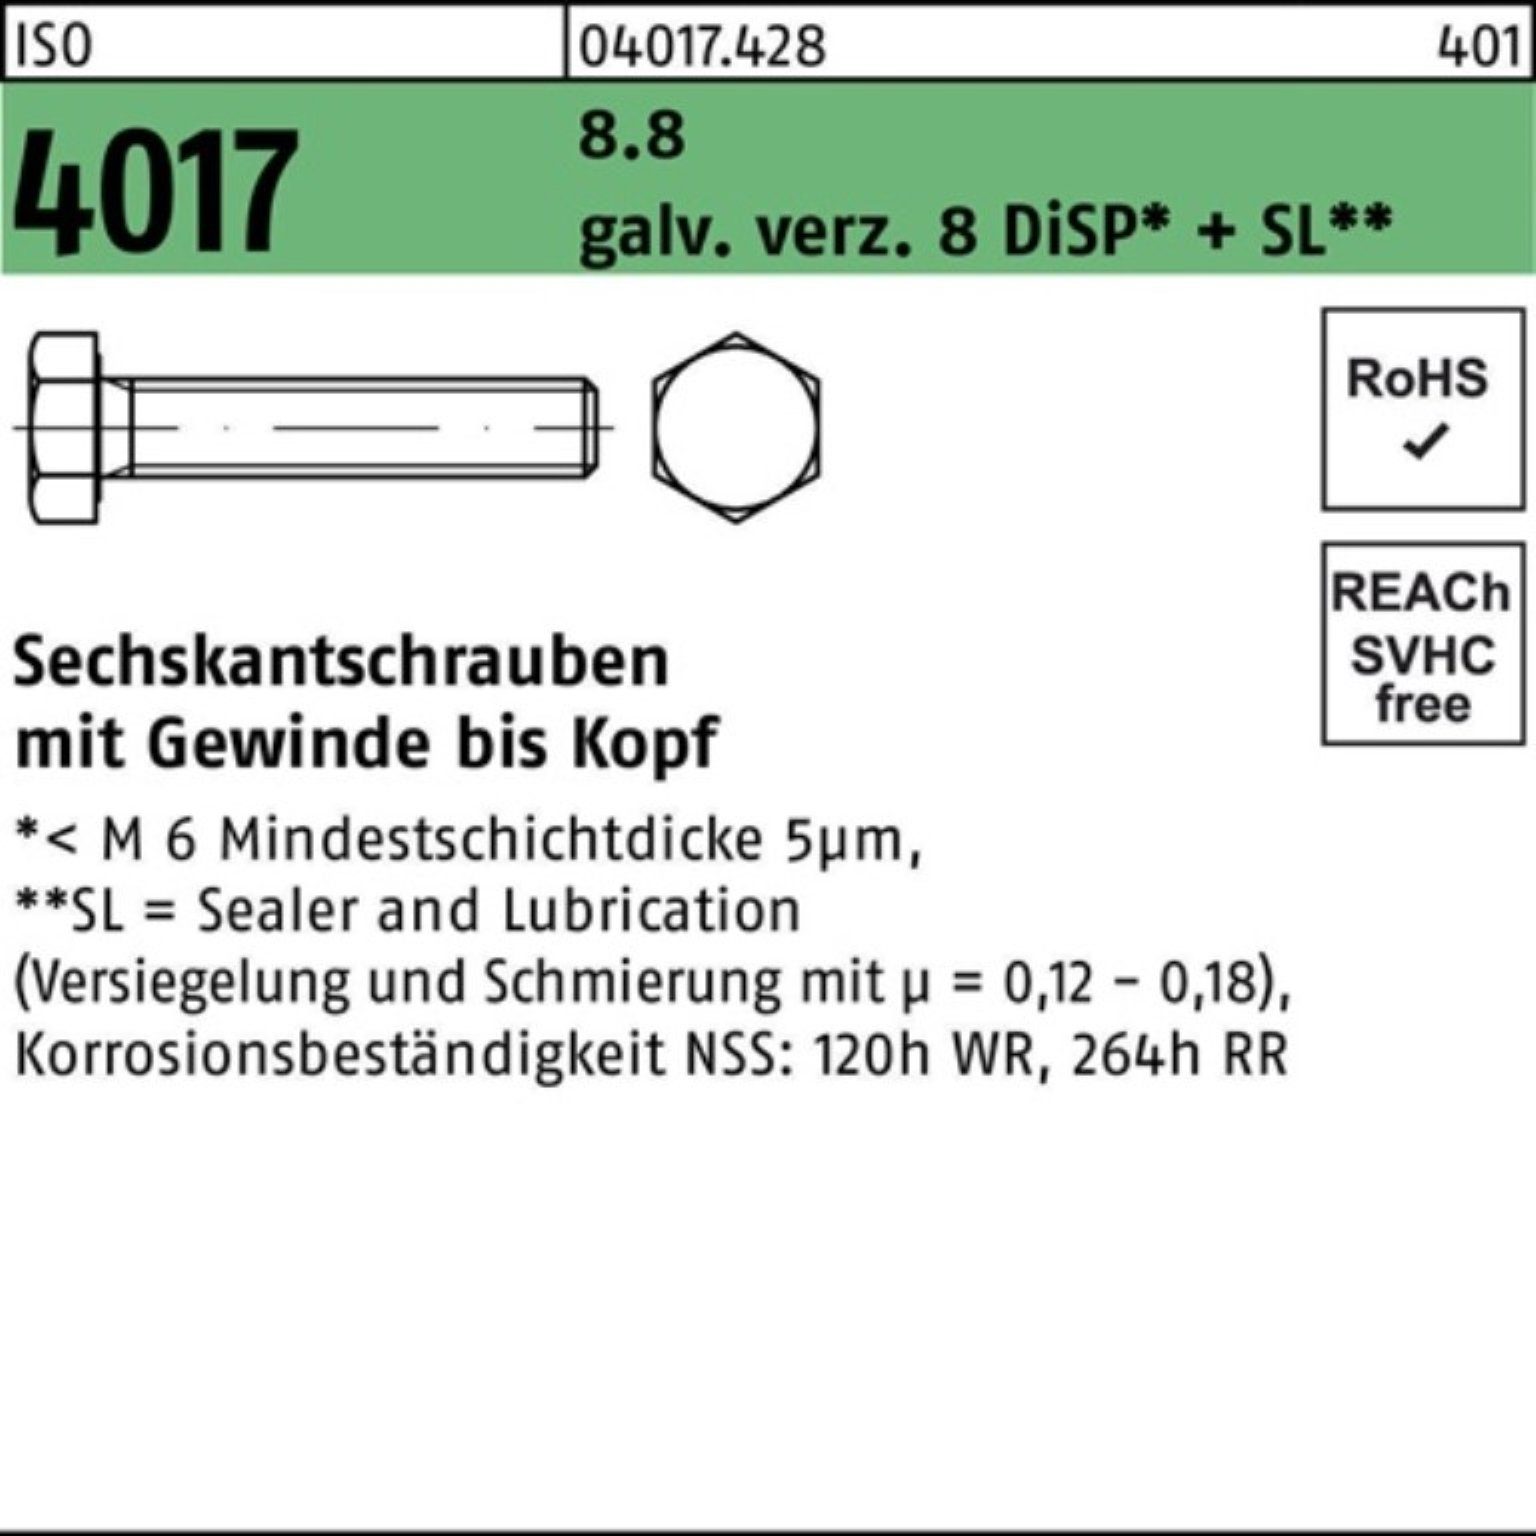 Bufab Sechskantschraube 100er 8 Sechskantschraube ISO Pack galv.verz. 4017 25 8.8 VG DiSP M16x